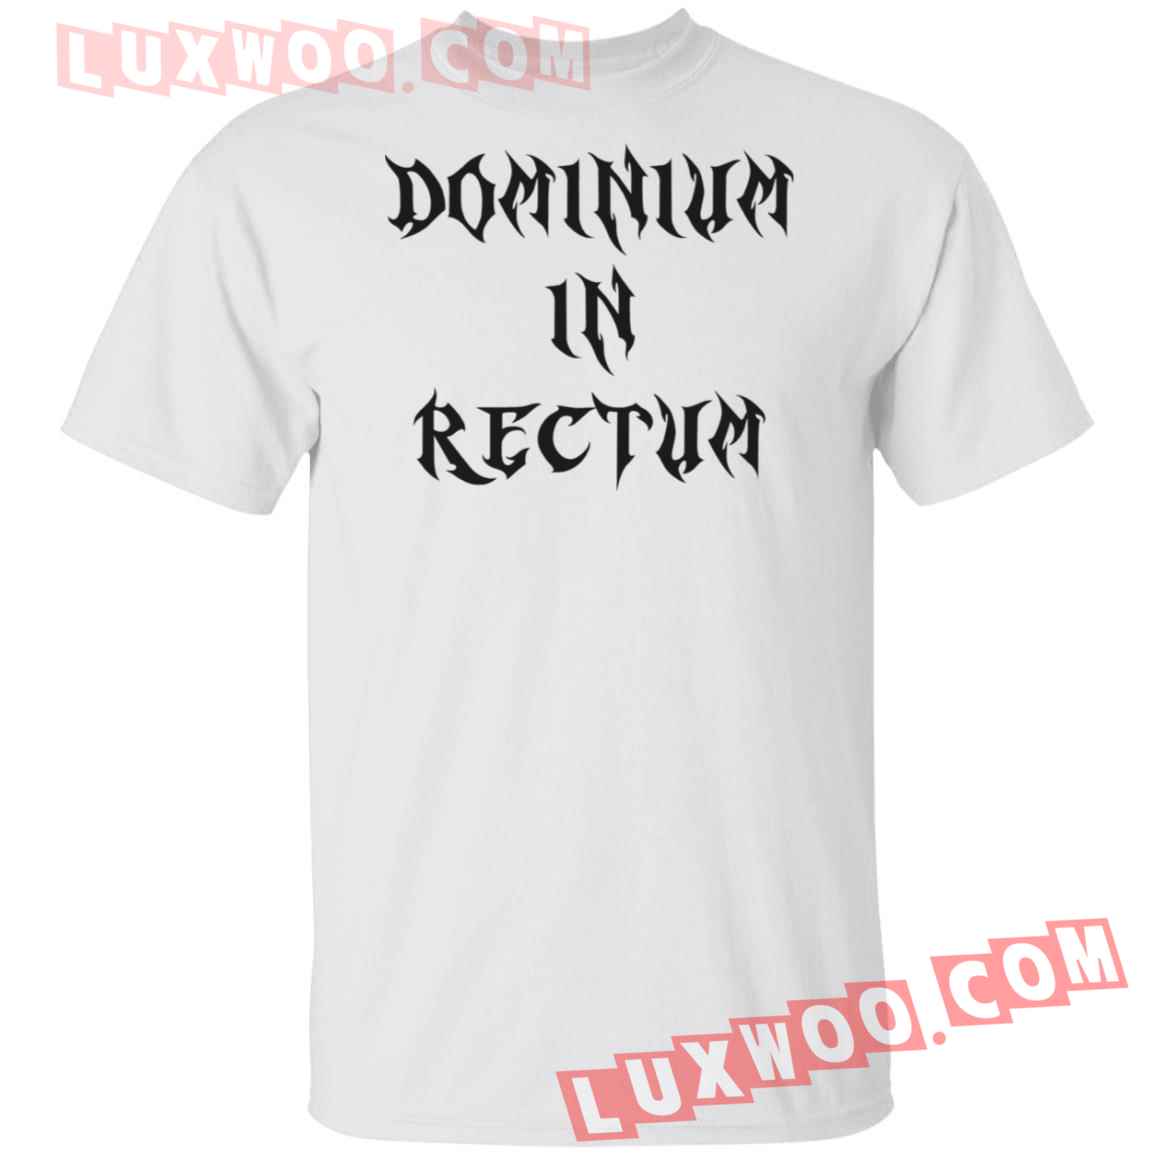 Dominium In Rectum Shirt